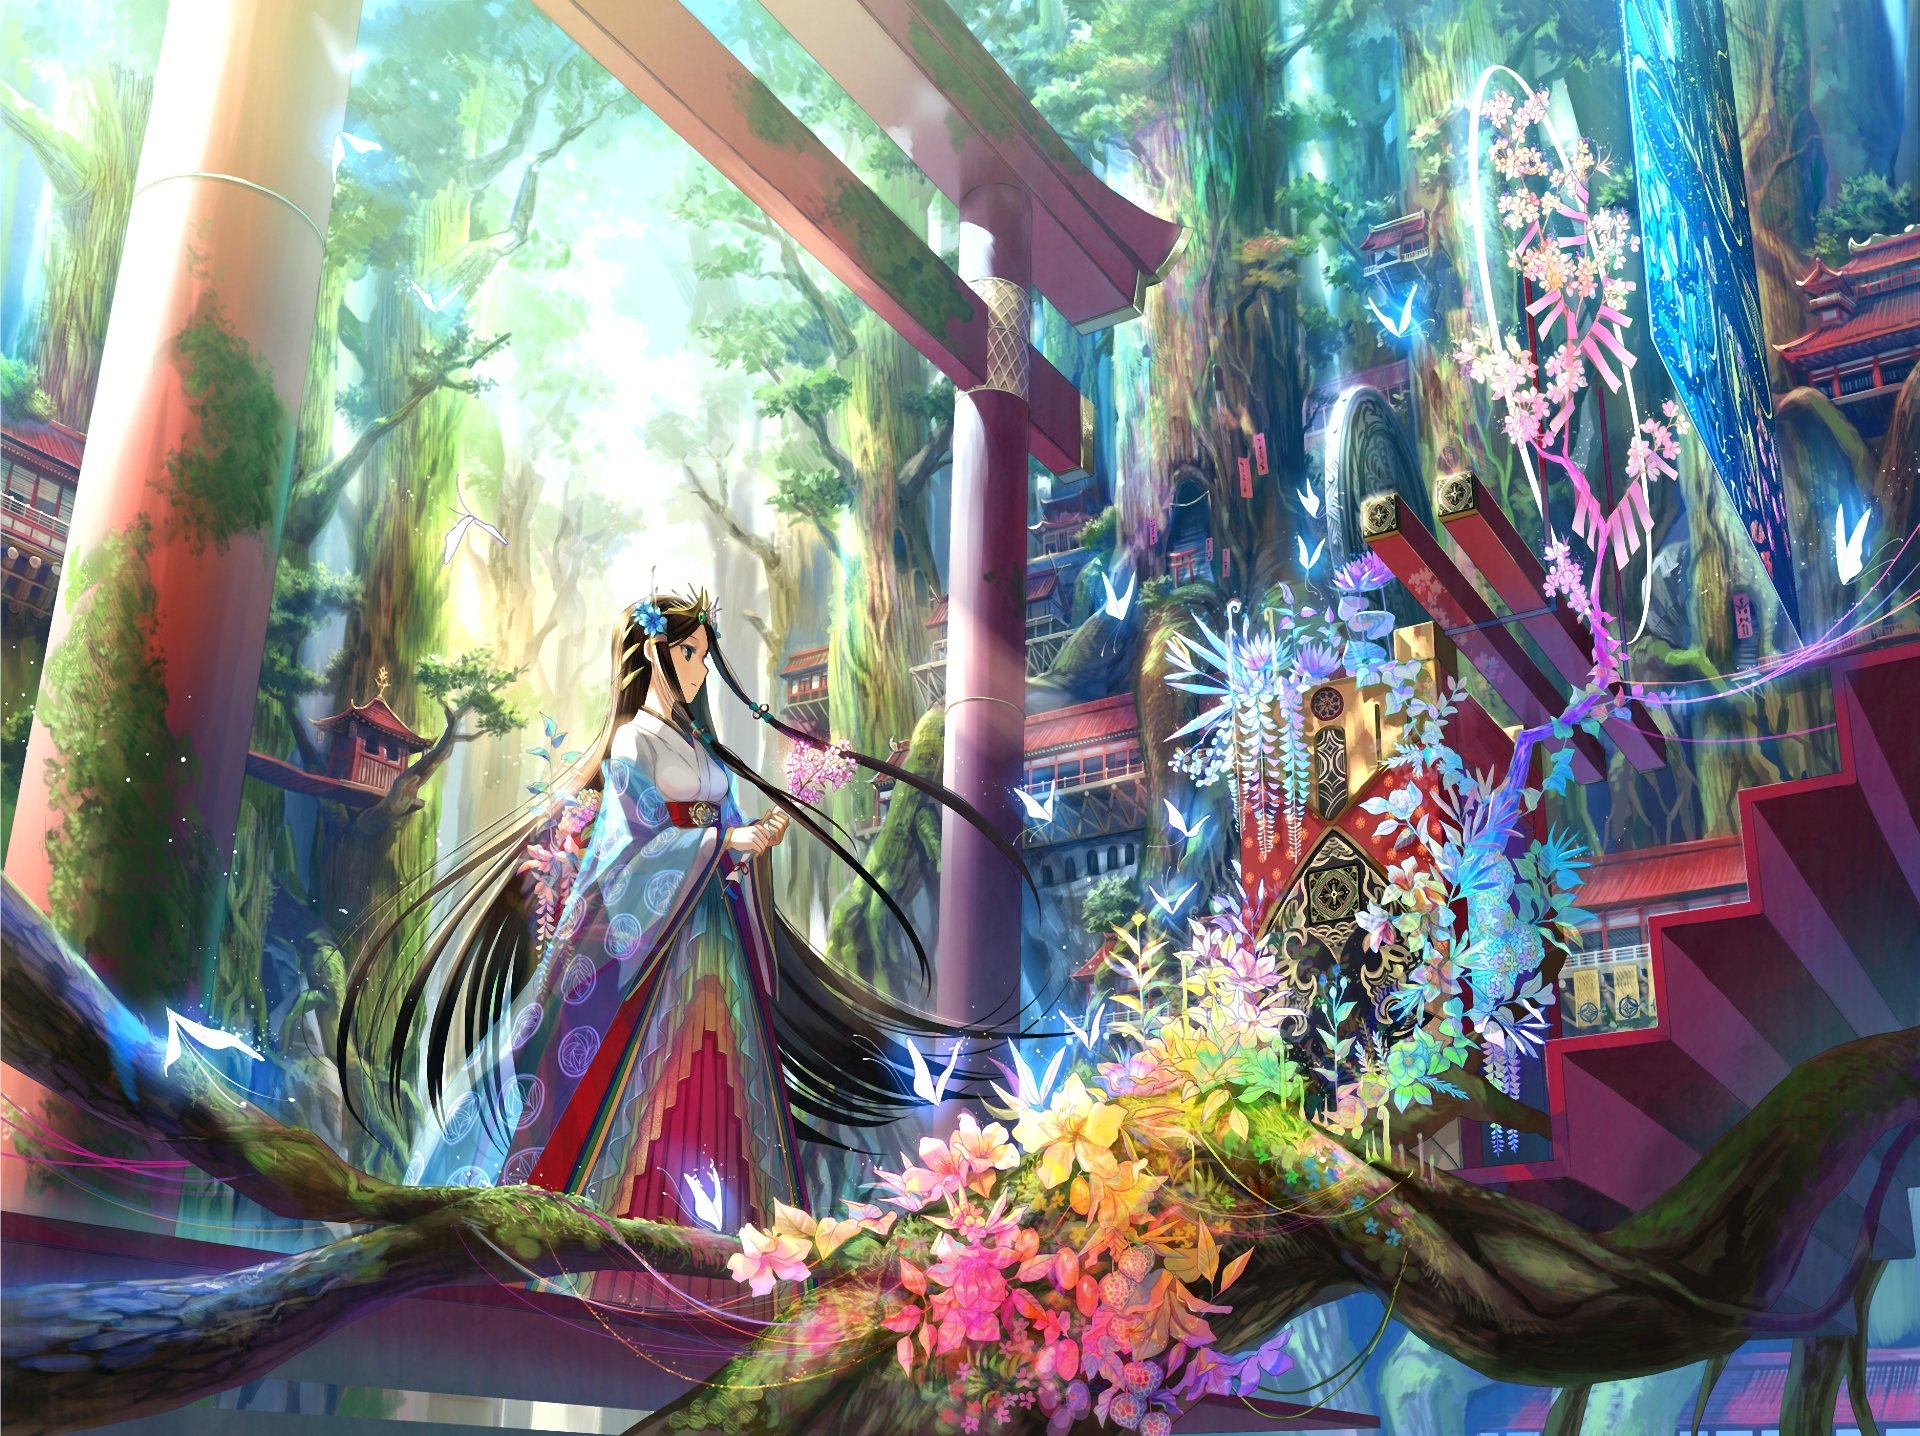 арт fuji choko девочка врата цветы ступеньки национальная одежда деревья лиана